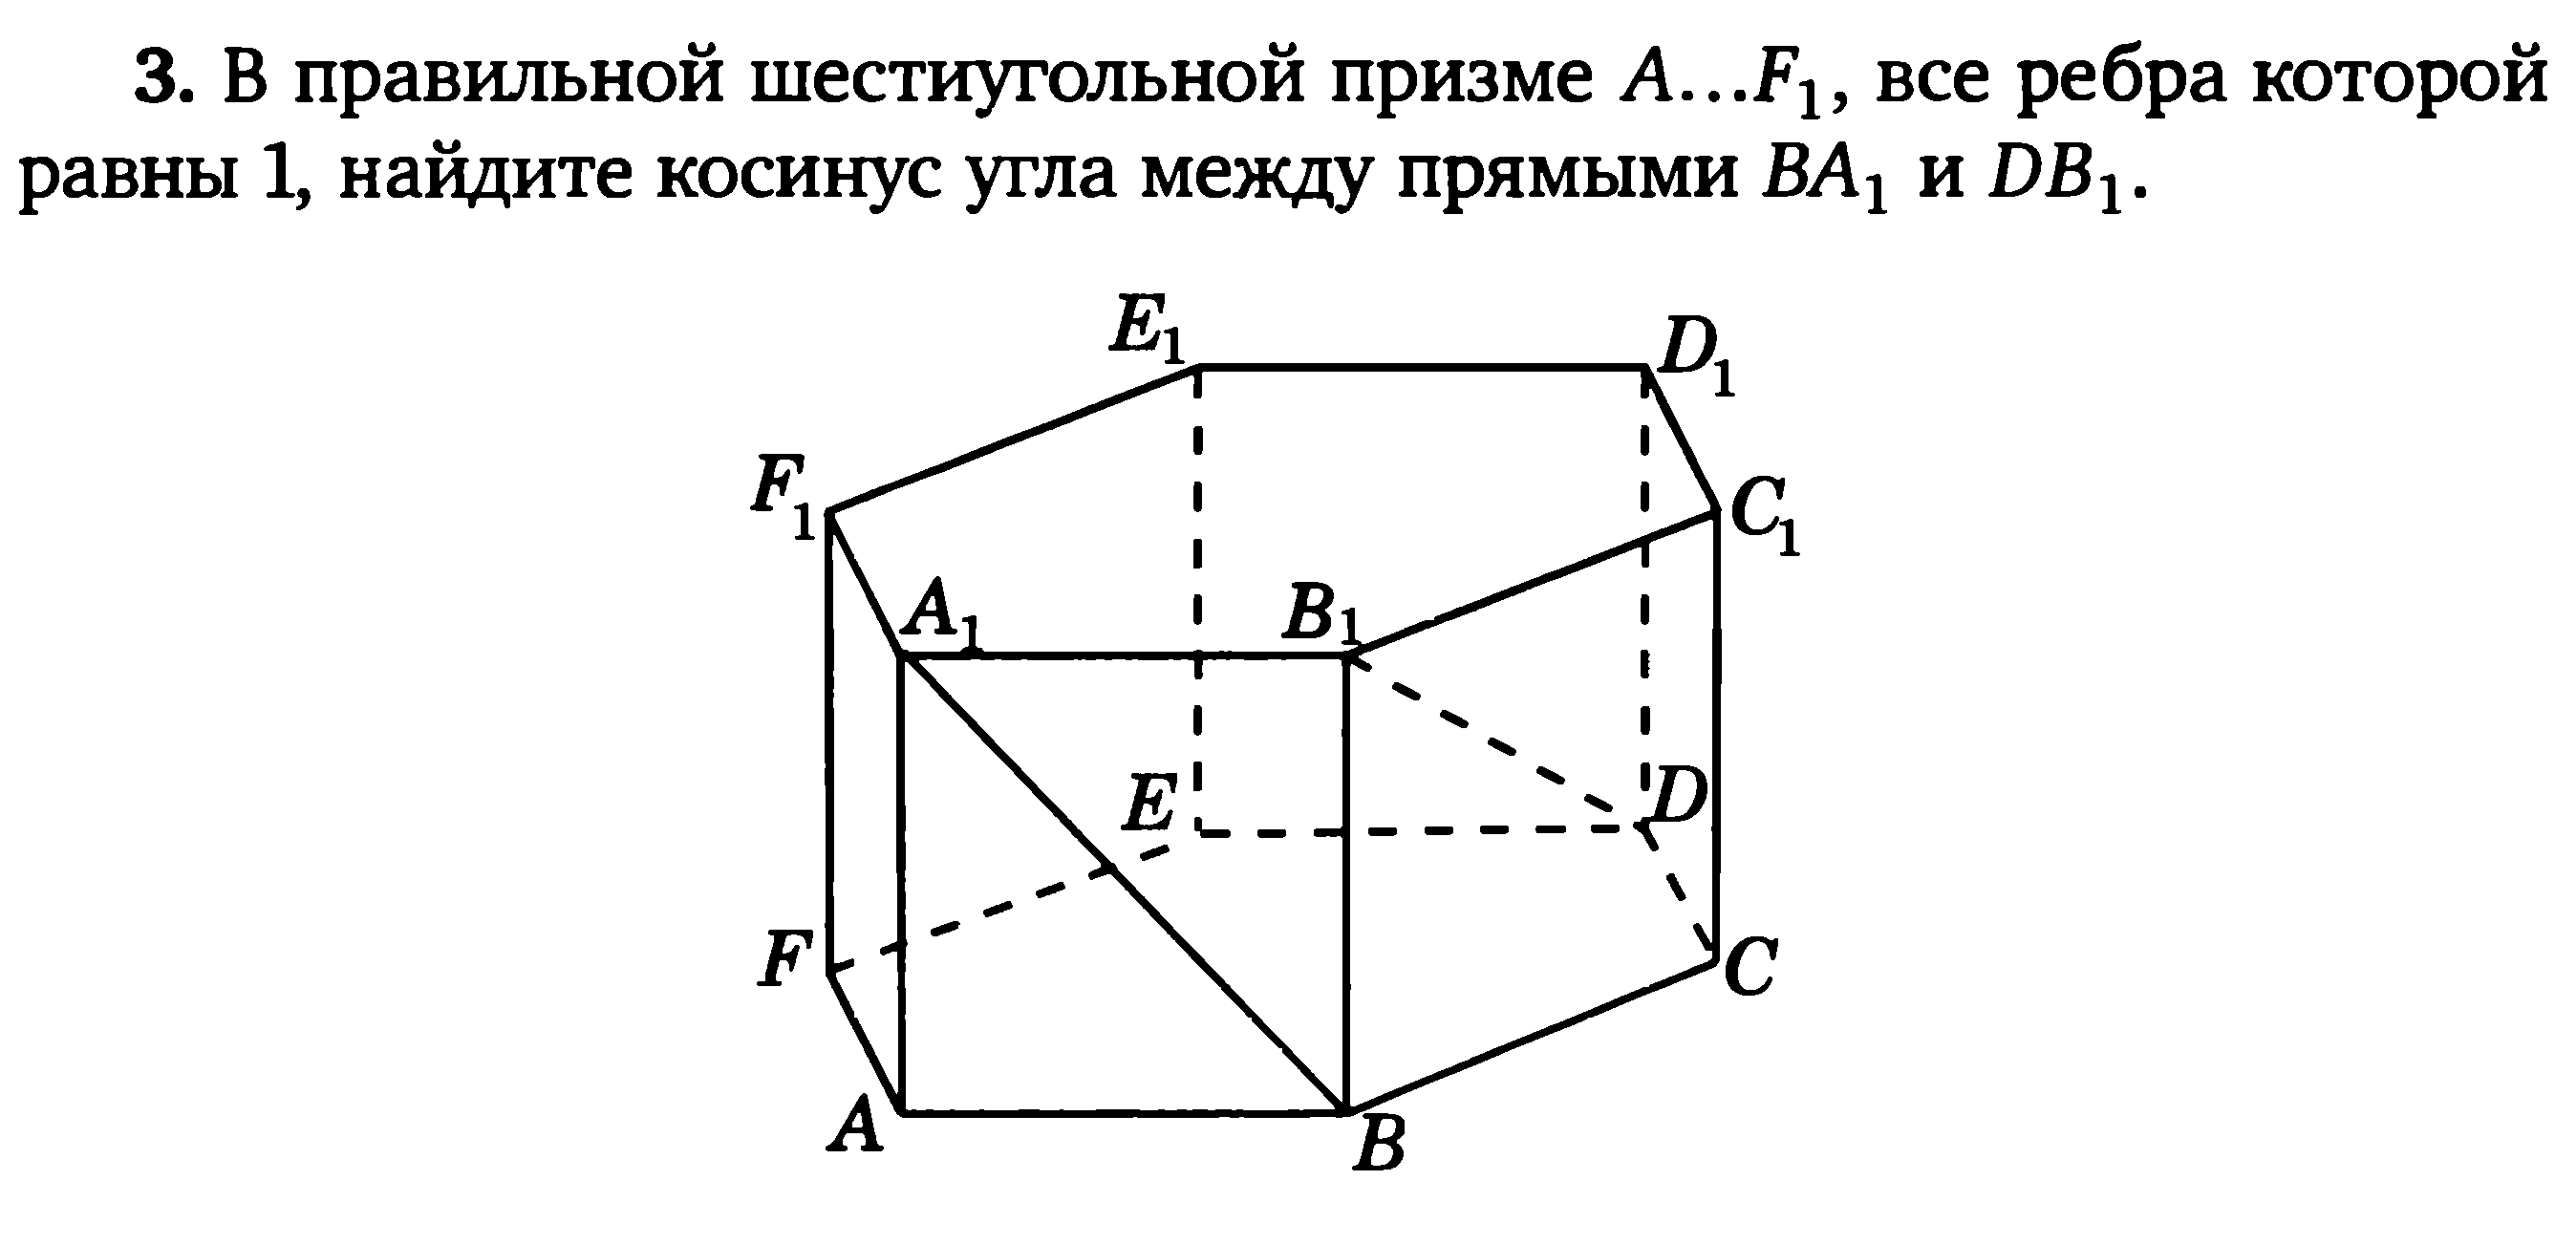 Координатный метод в шестиугольной призме